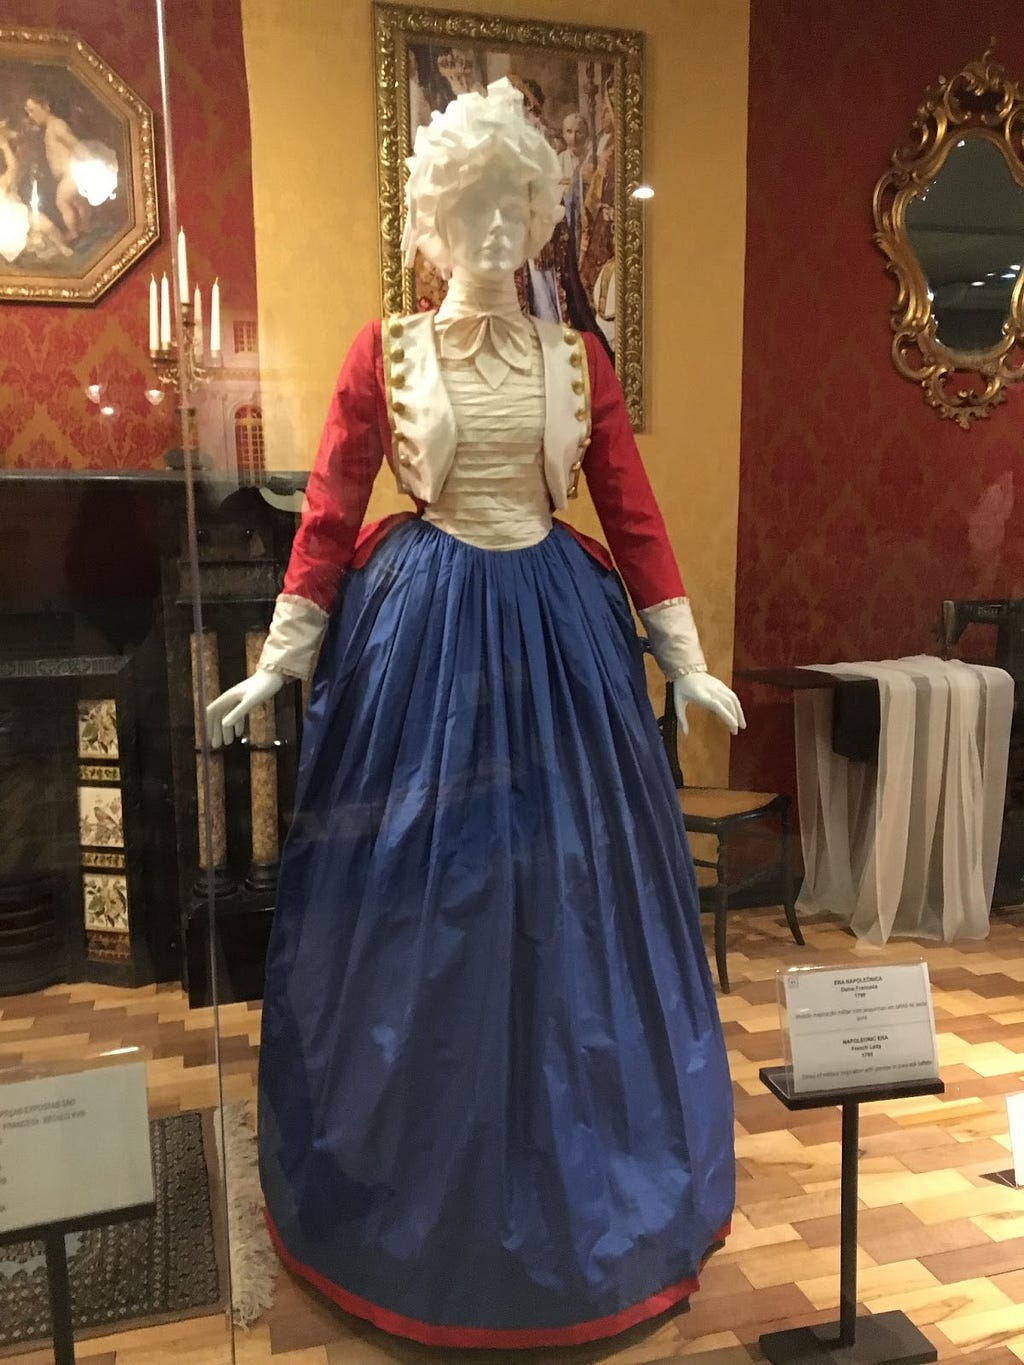 Um manequim feminino usando uma réplica de um vestido da Era Napoleônica, com um casaco vermelho com detalhes brancos em estilo militar da época, parte superior do vestido branca, uma saia azul escura, longa, e uma peruca cacheada branca.